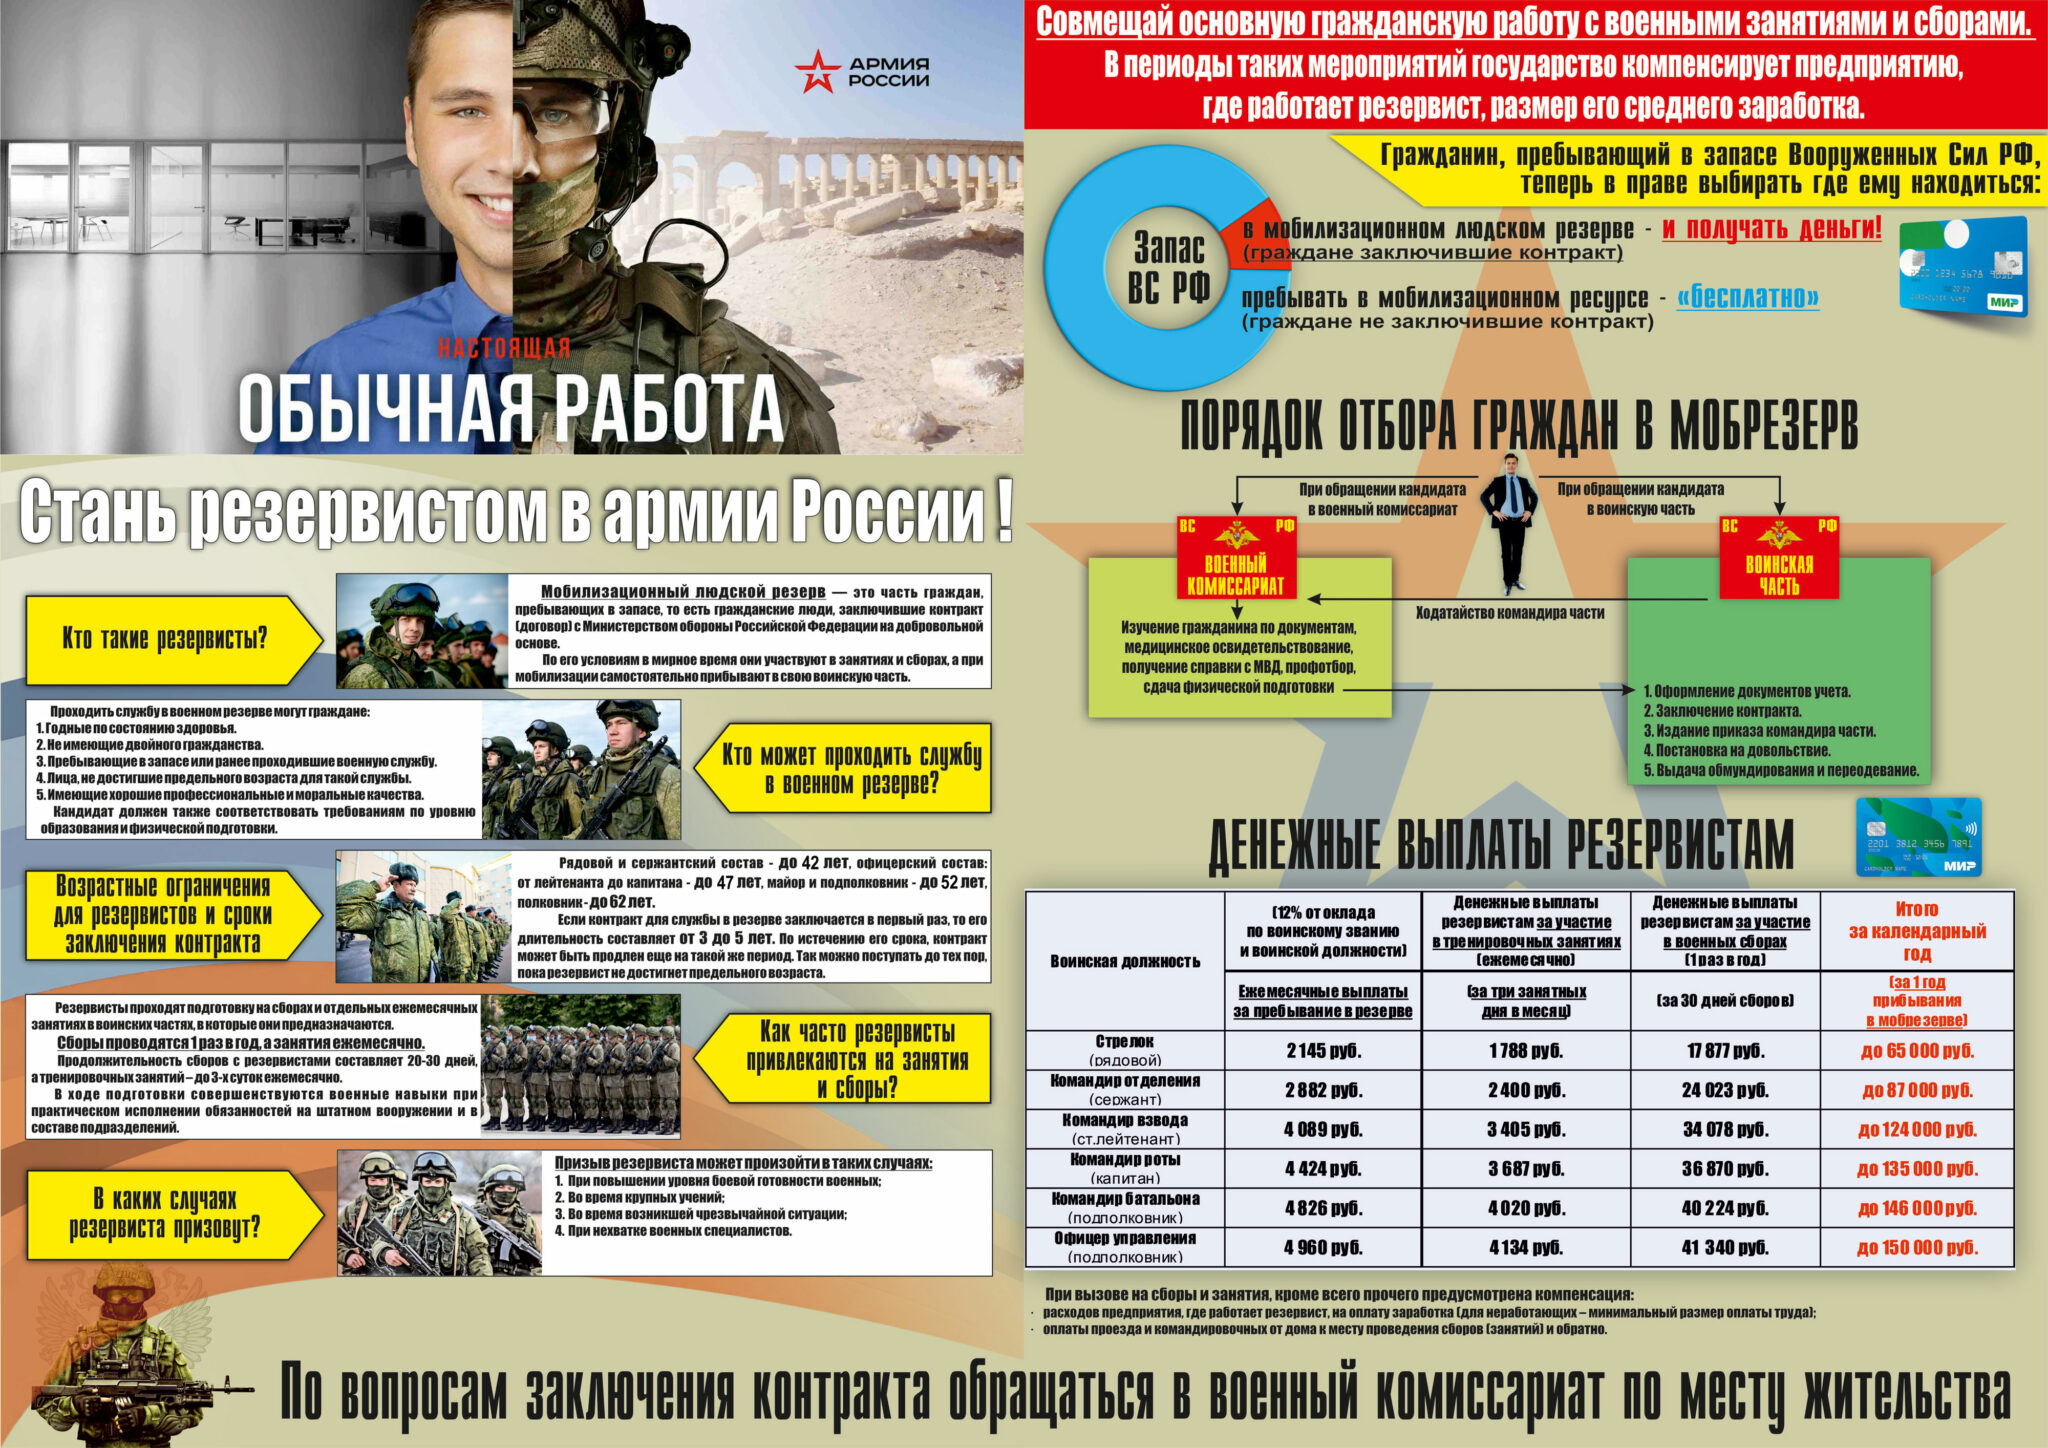 Мобилизационный людской резерв Вооруженных сил Российской Федерации